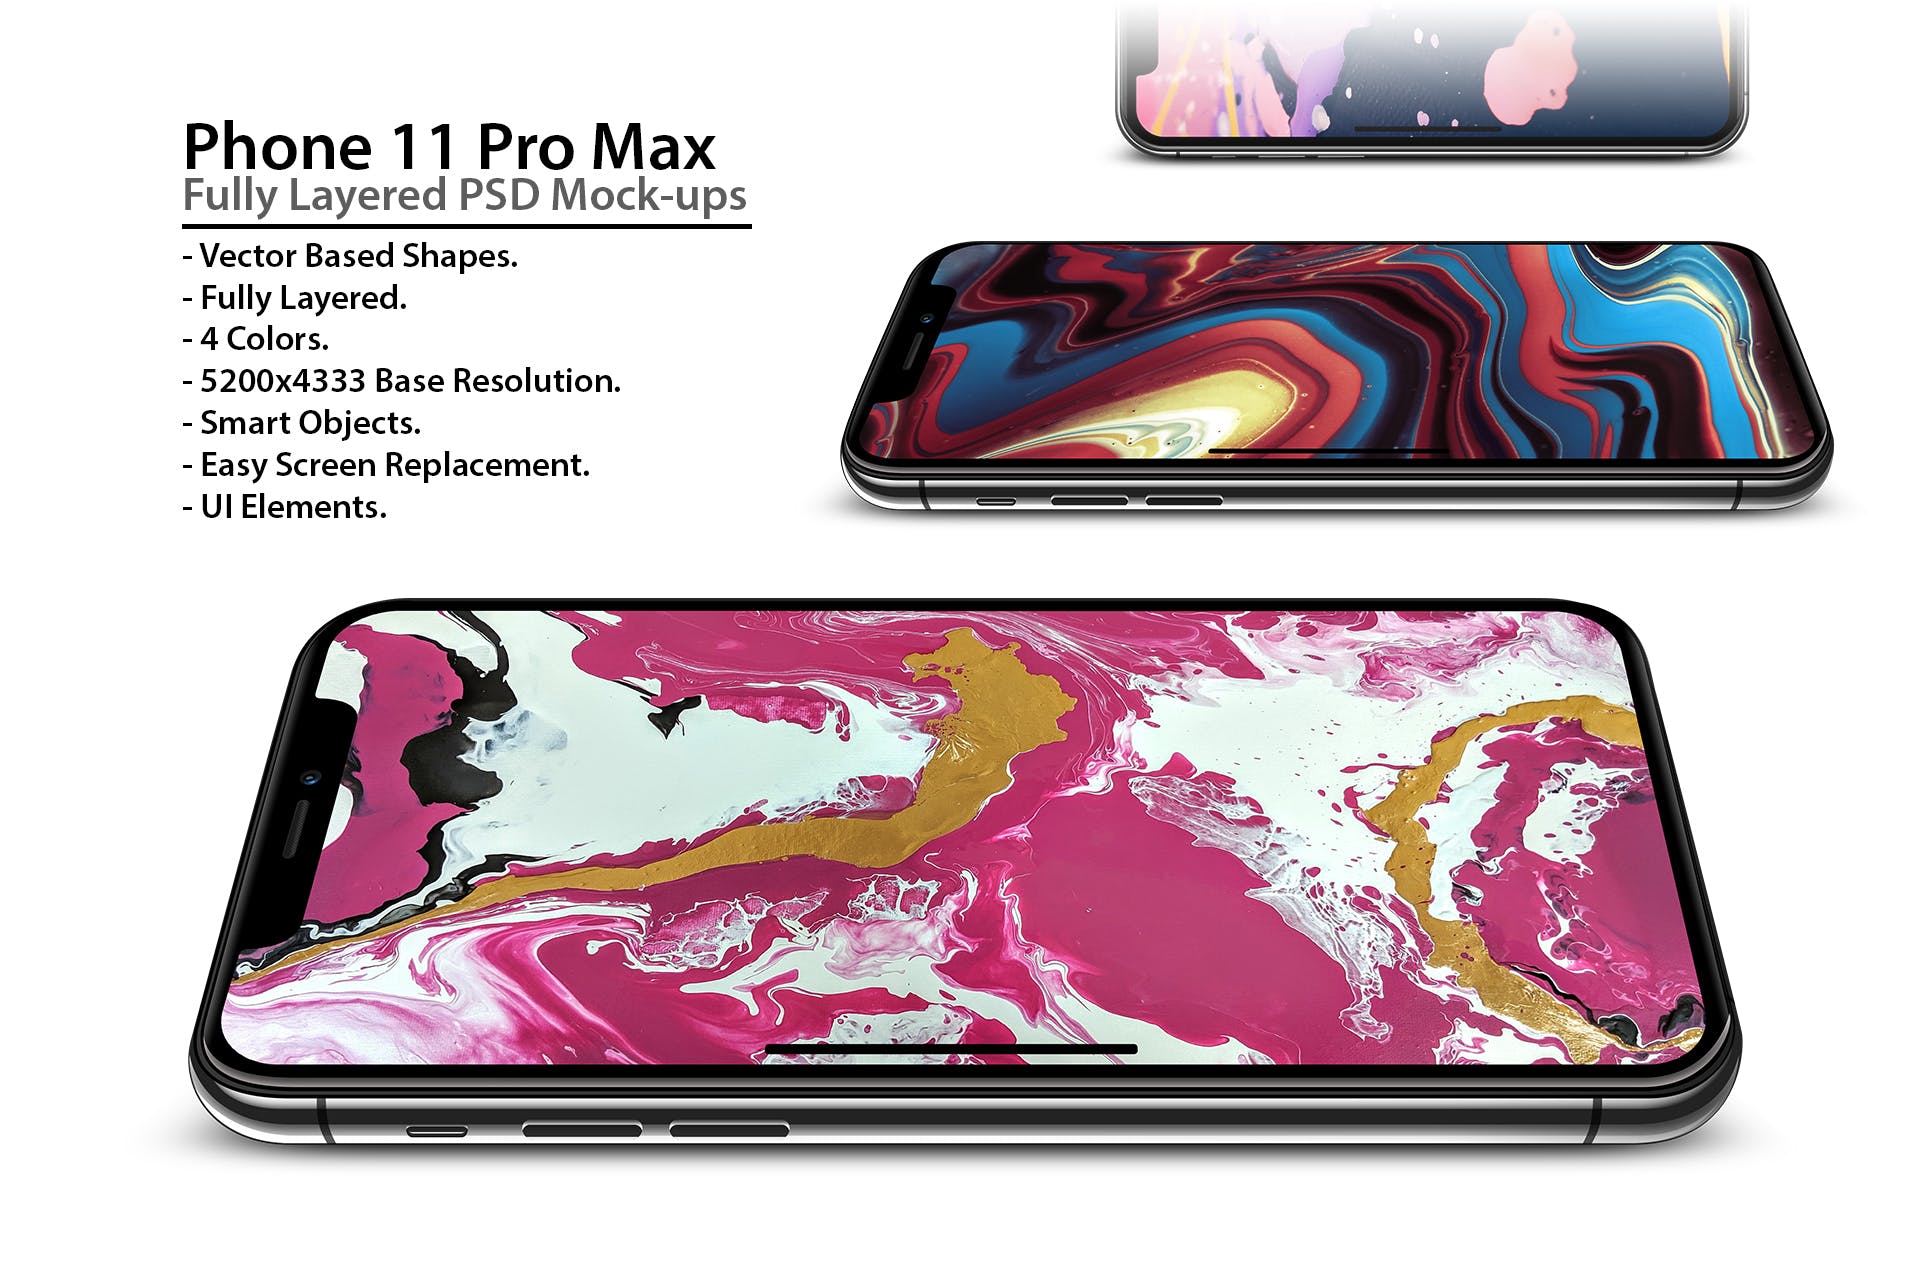 超高清分辨率iPhone Pro Max手机屏幕预览样机模板 Phone 11 Pro Layered PSD Mock-ups插图